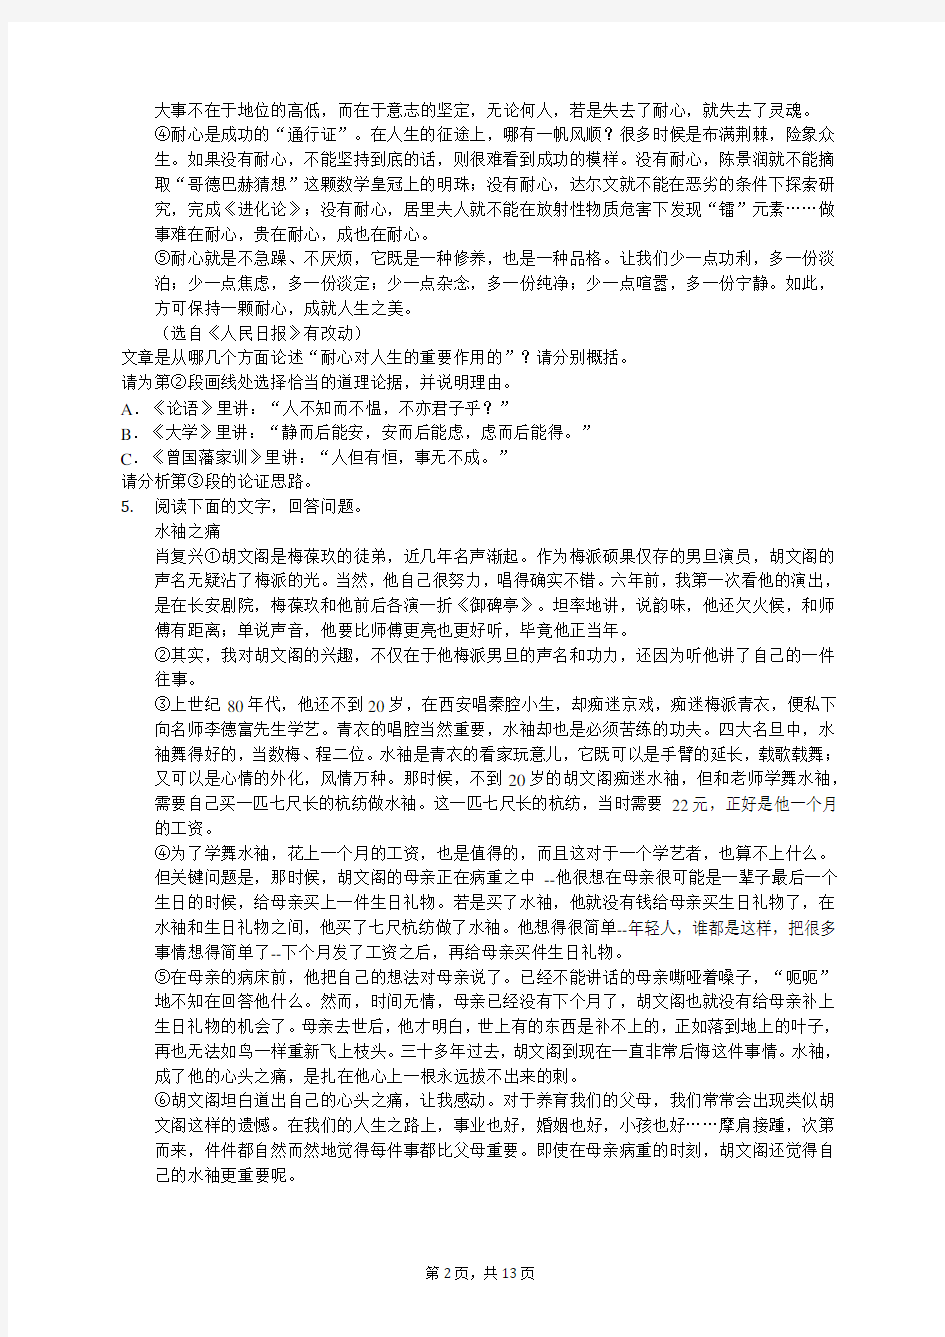 2020年河北省中考语文模拟试卷(有答案解析)